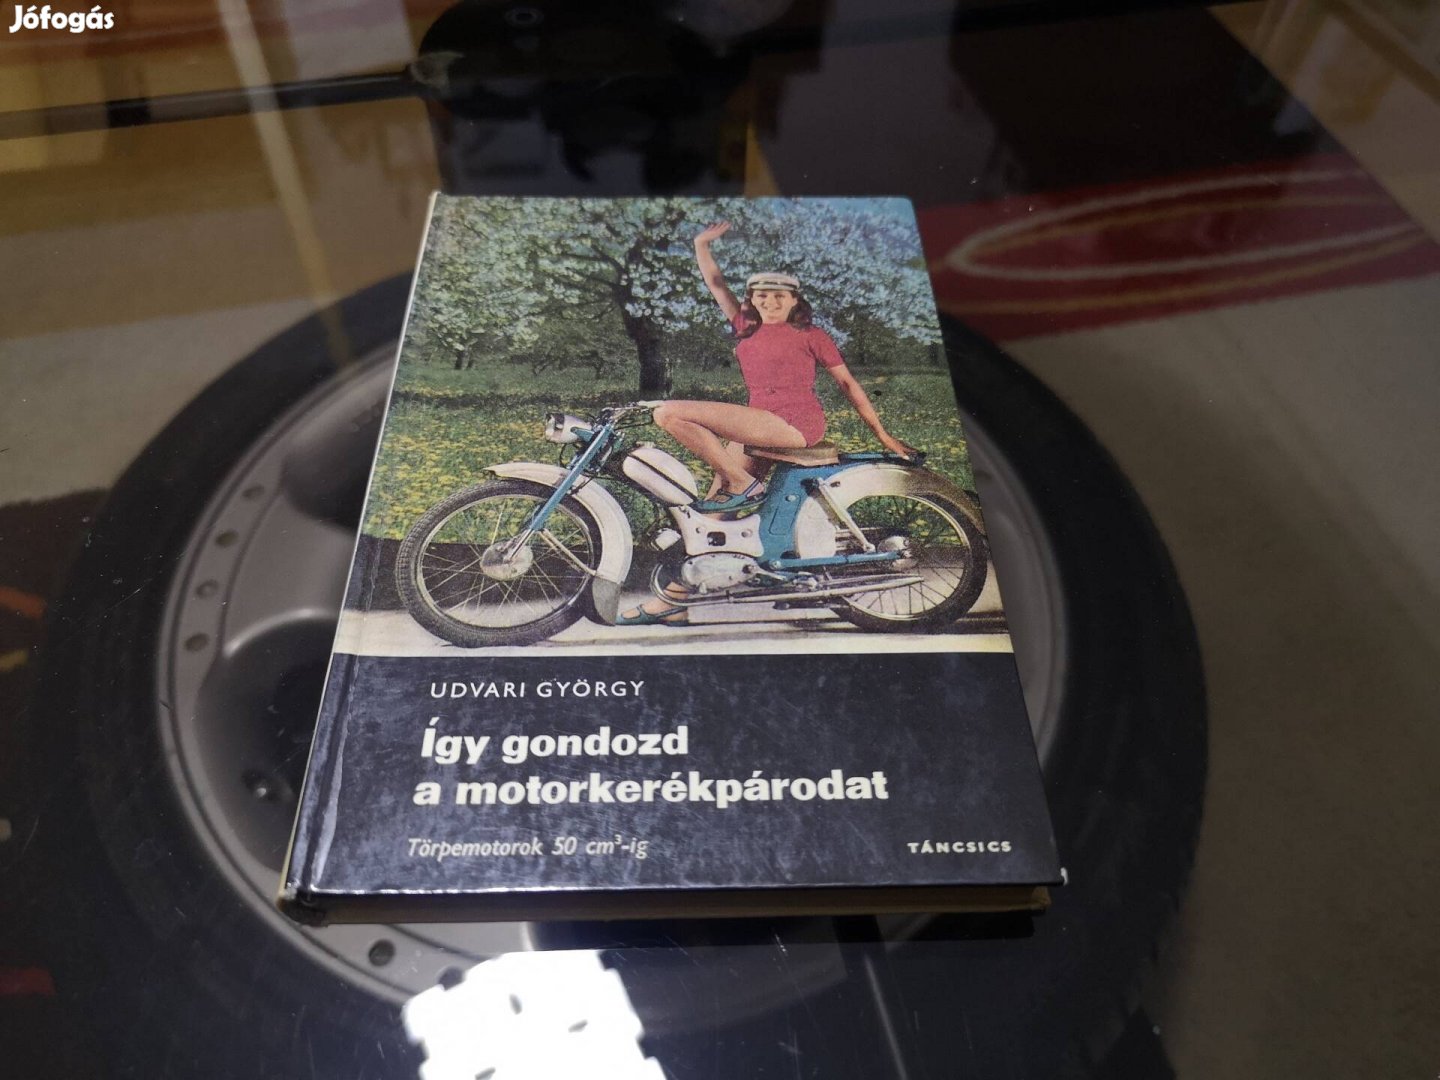 Igy gondozd a motorkerékpárodat könyv